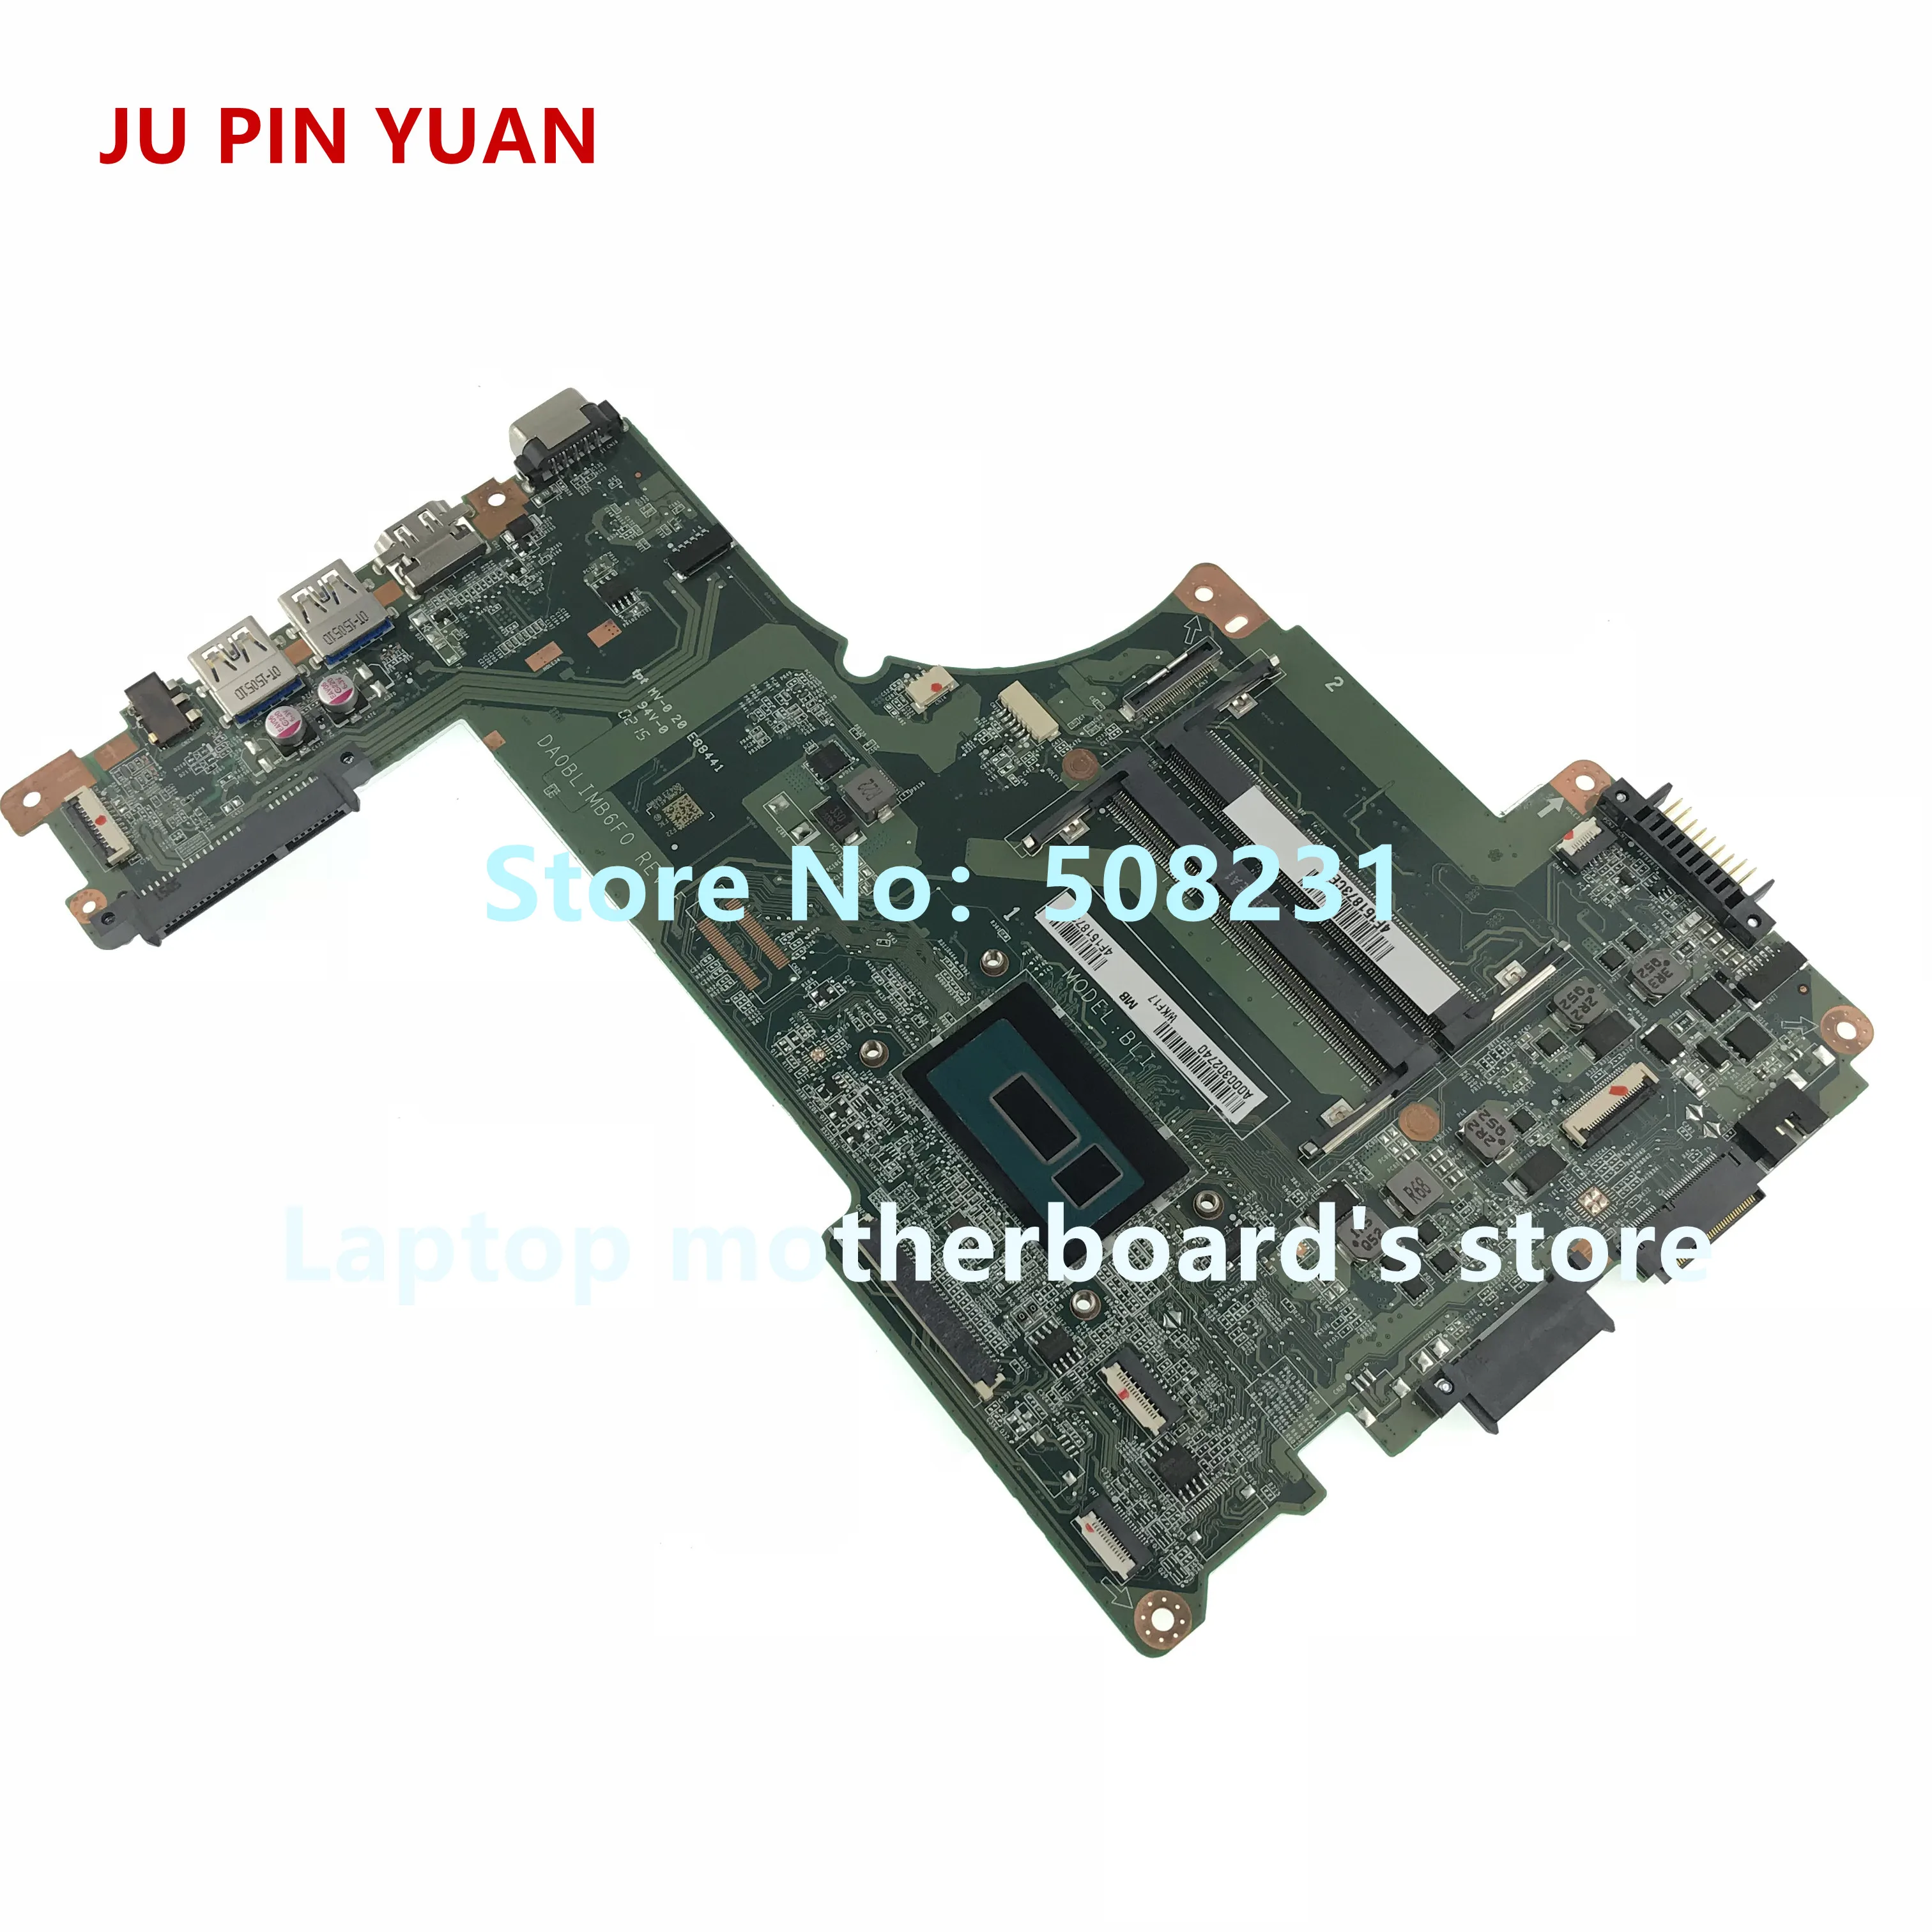 SP PIN YUAN A000302740 za TOSHIBA Satellite L50-B L55-B S50-B S55-B L50T-B prenosni računalnik z matično ploščo DA0BLIMB6F0 z i5-5200U